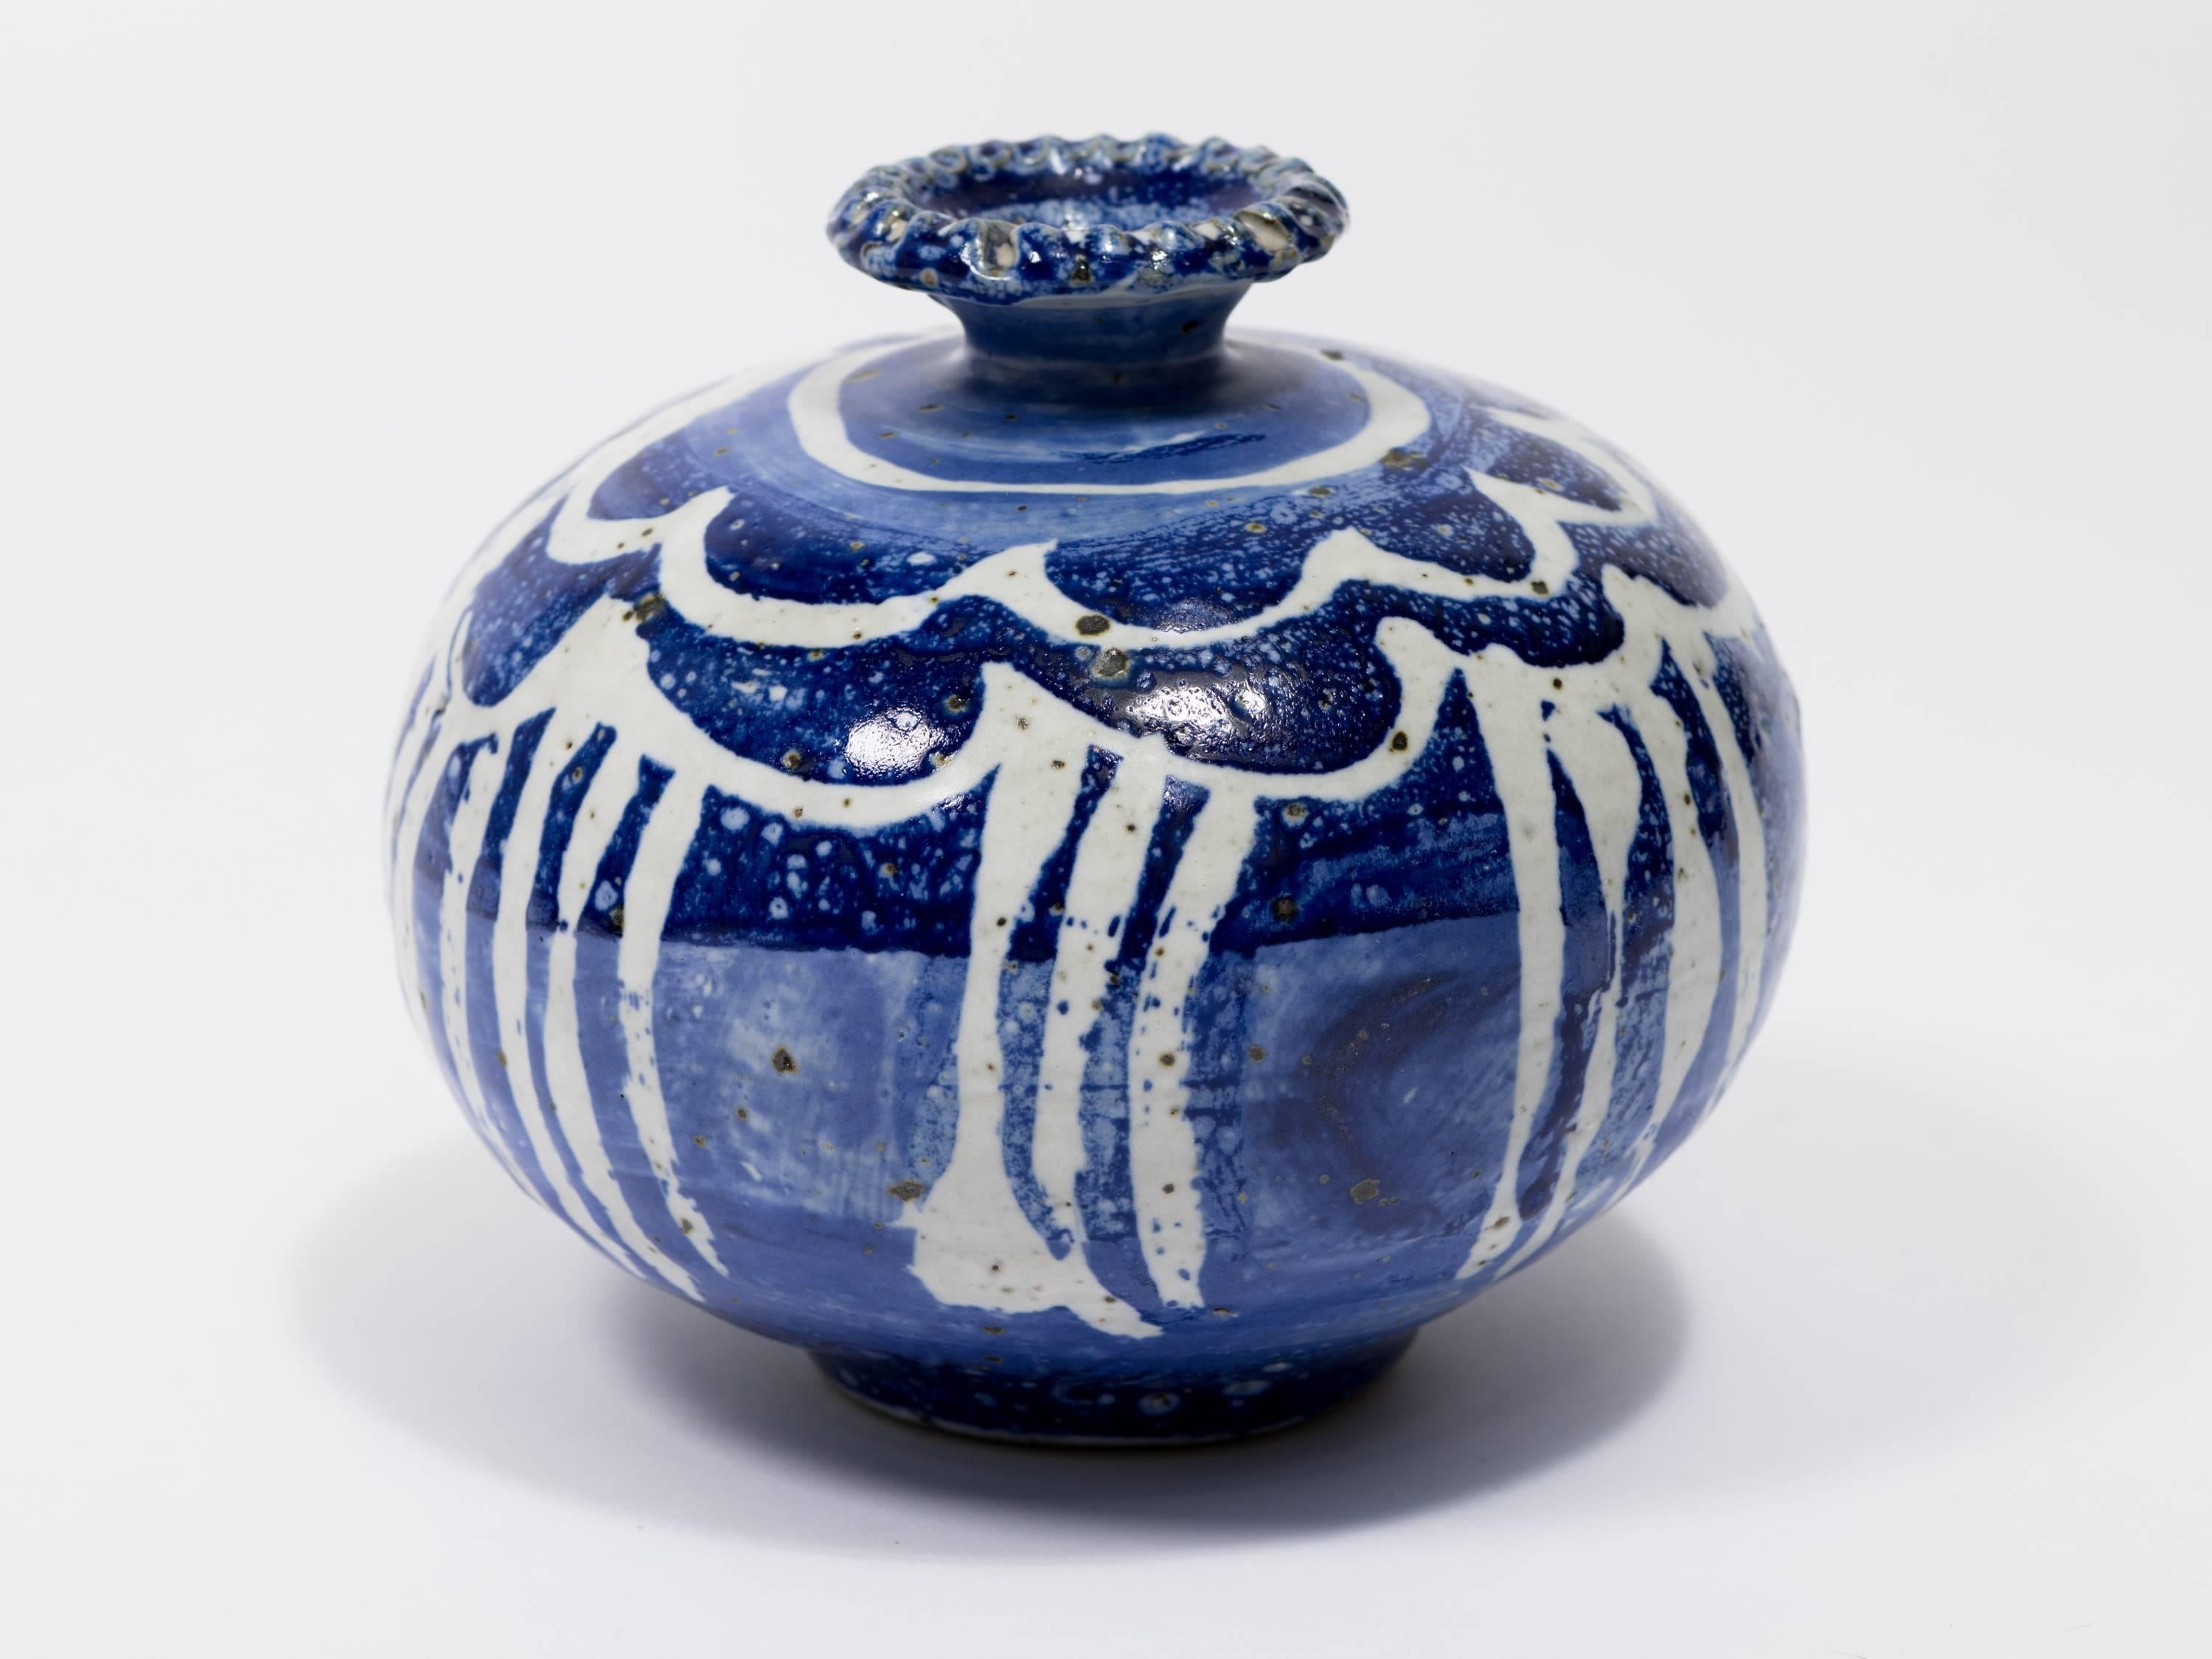 Signed Danish style blue and white pottery vase.